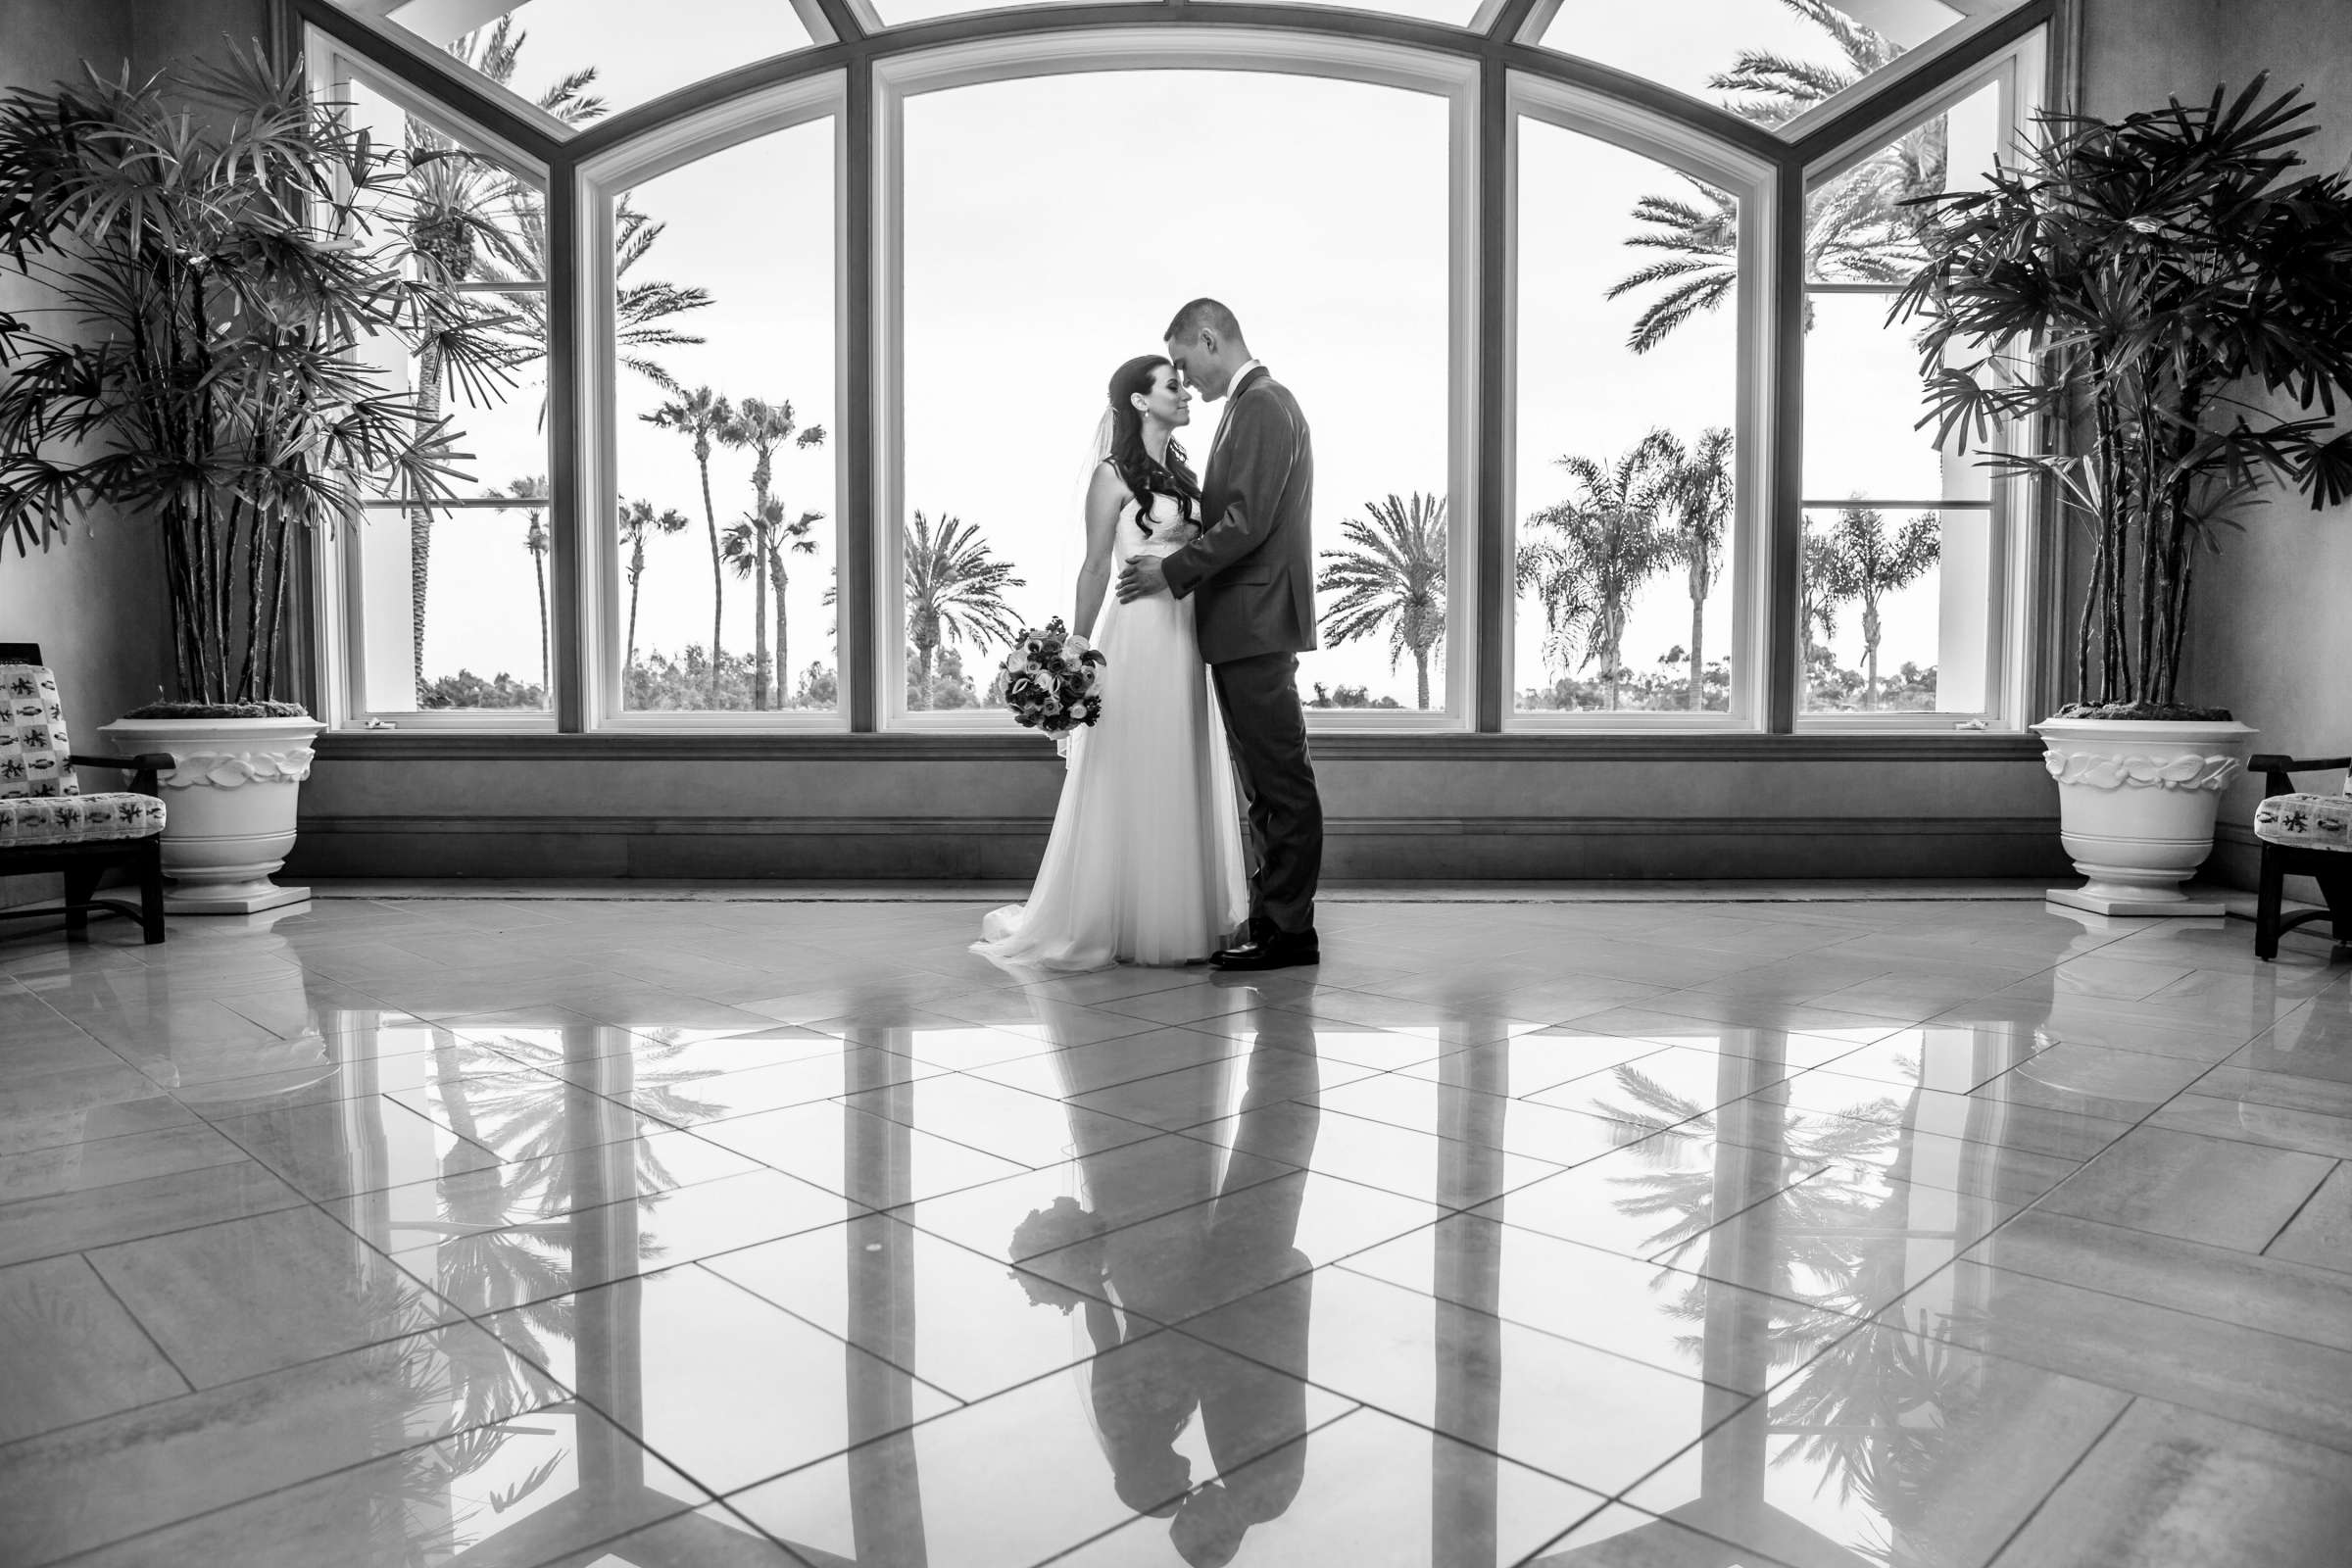 Park Hyatt Aviara Wedding, Jena and Keaton Wedding Photo #2 by True Photography